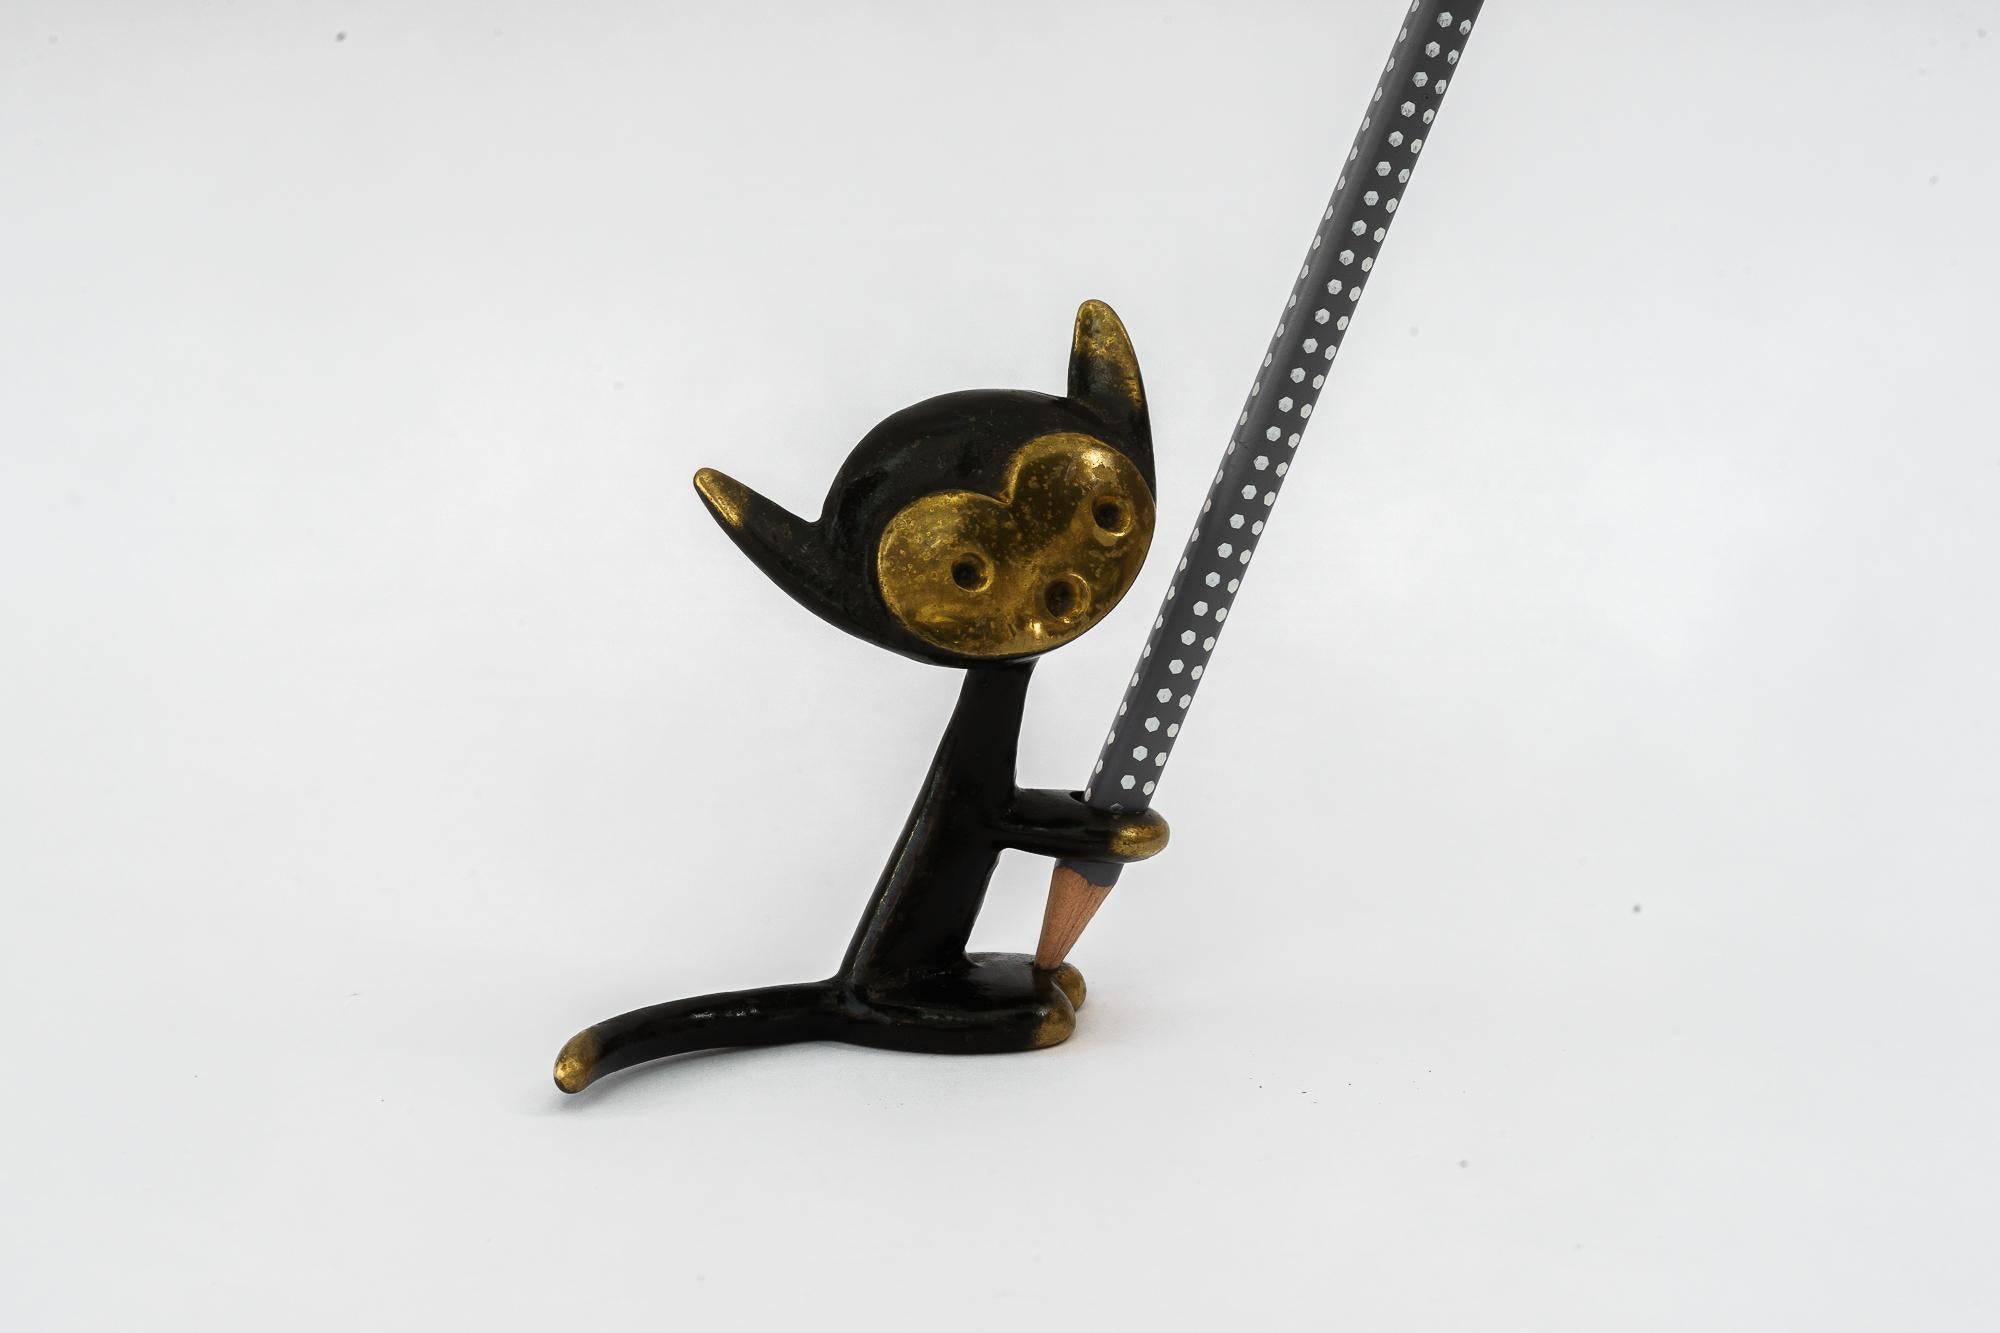 Porte-plume de Walter Bosse représentant un chat vers les années 1950
Le stylo n'est pas à vendre, il sert uniquement à la prise de photos.
Etat original